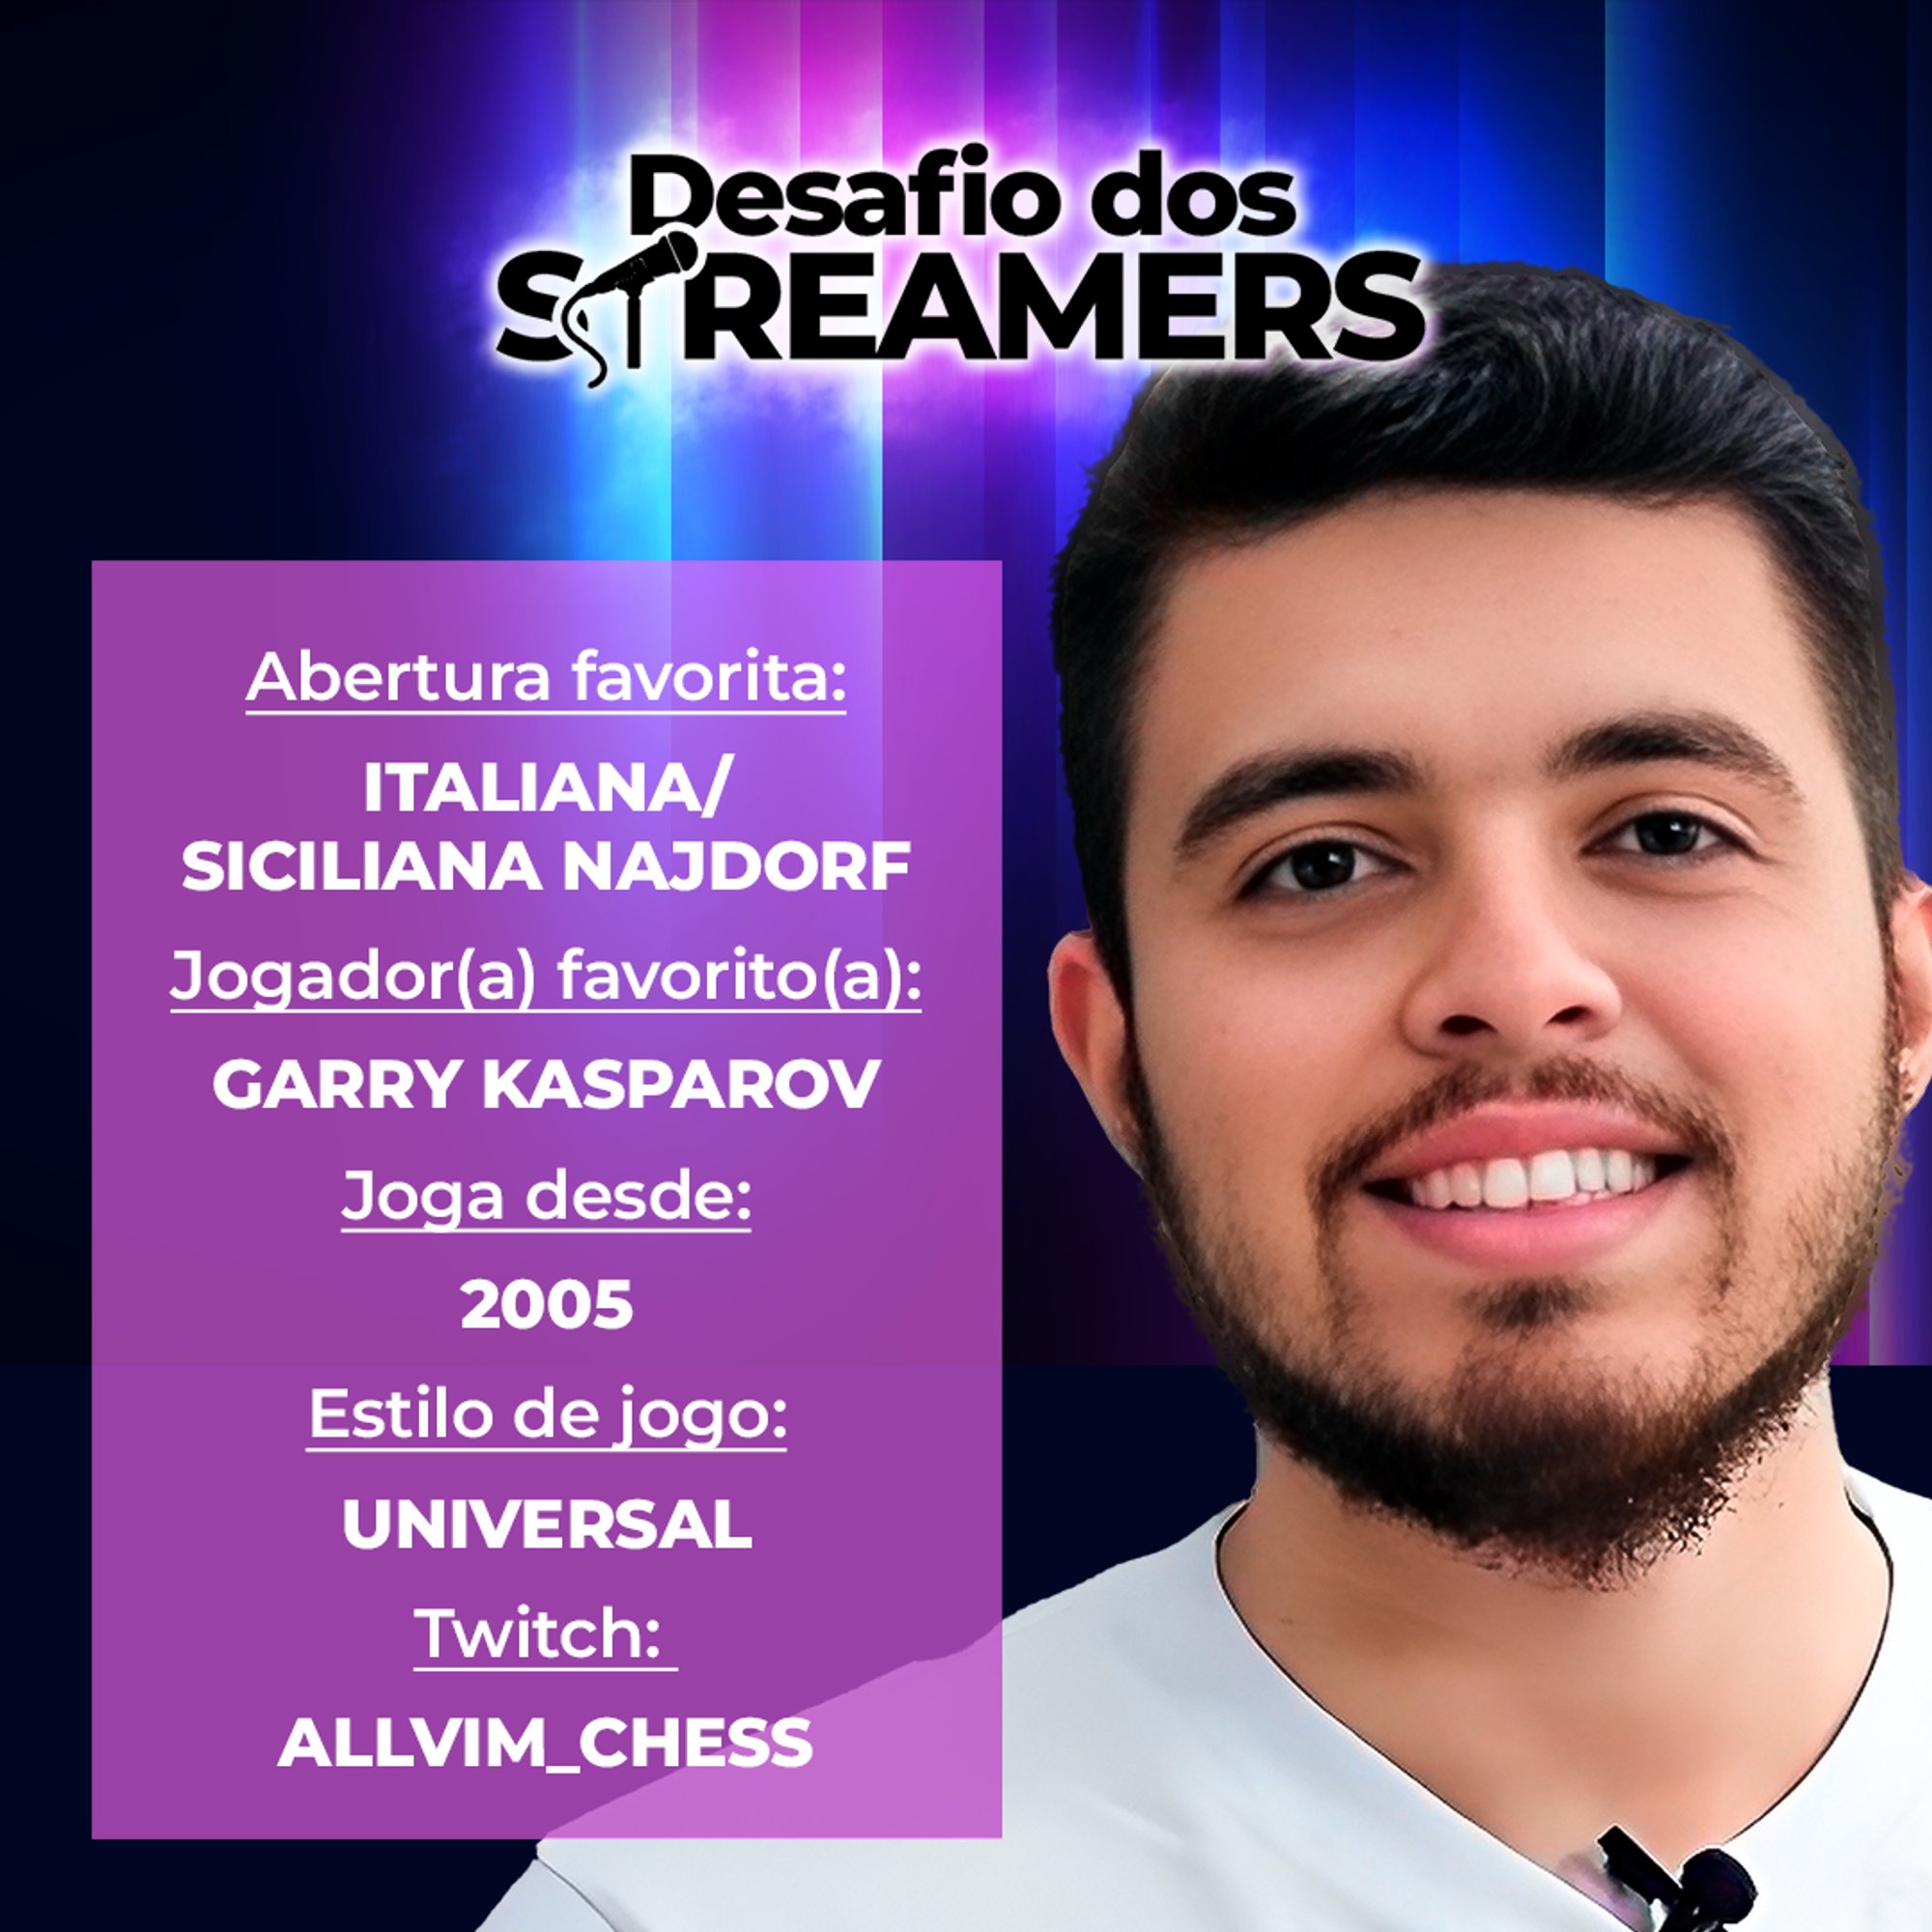 Chess.com Português on X: Vamos conhecer um pouco mais dos jogadores do  Desafio dos Streamers? Começando pelo @allvim_chess! Começa sábado, dia 18  🔥 -> teremos transmissão com Krikor e Flor! Desenrola o🧶!